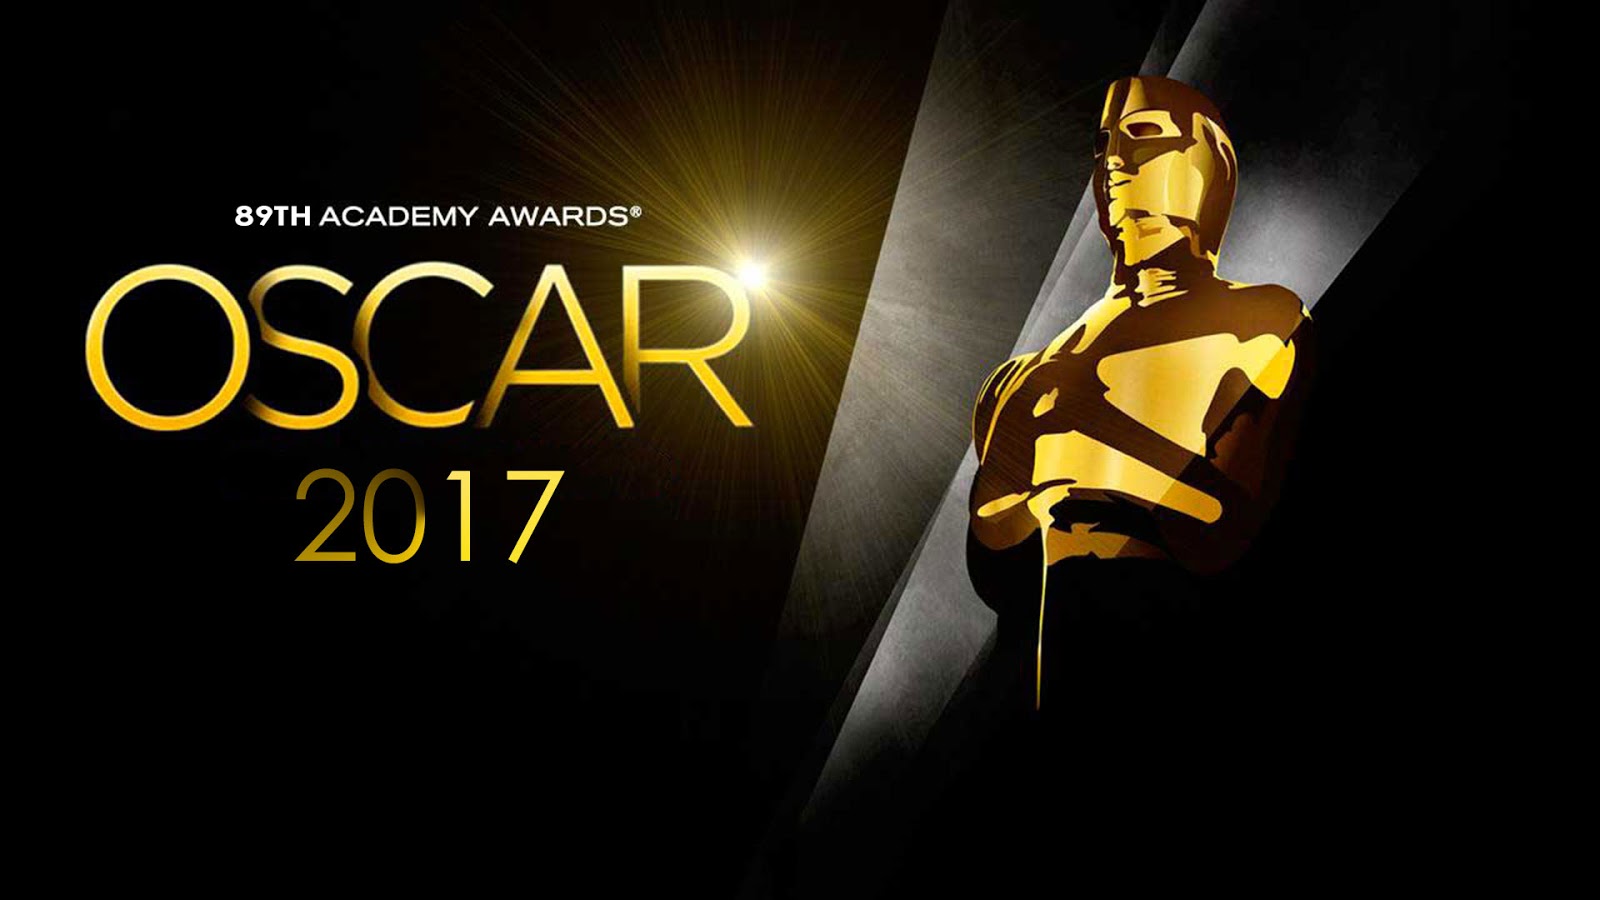 Oscars 2017 (hilo para Warm vamos) 2017-Oscars-89th-Academy-Awards